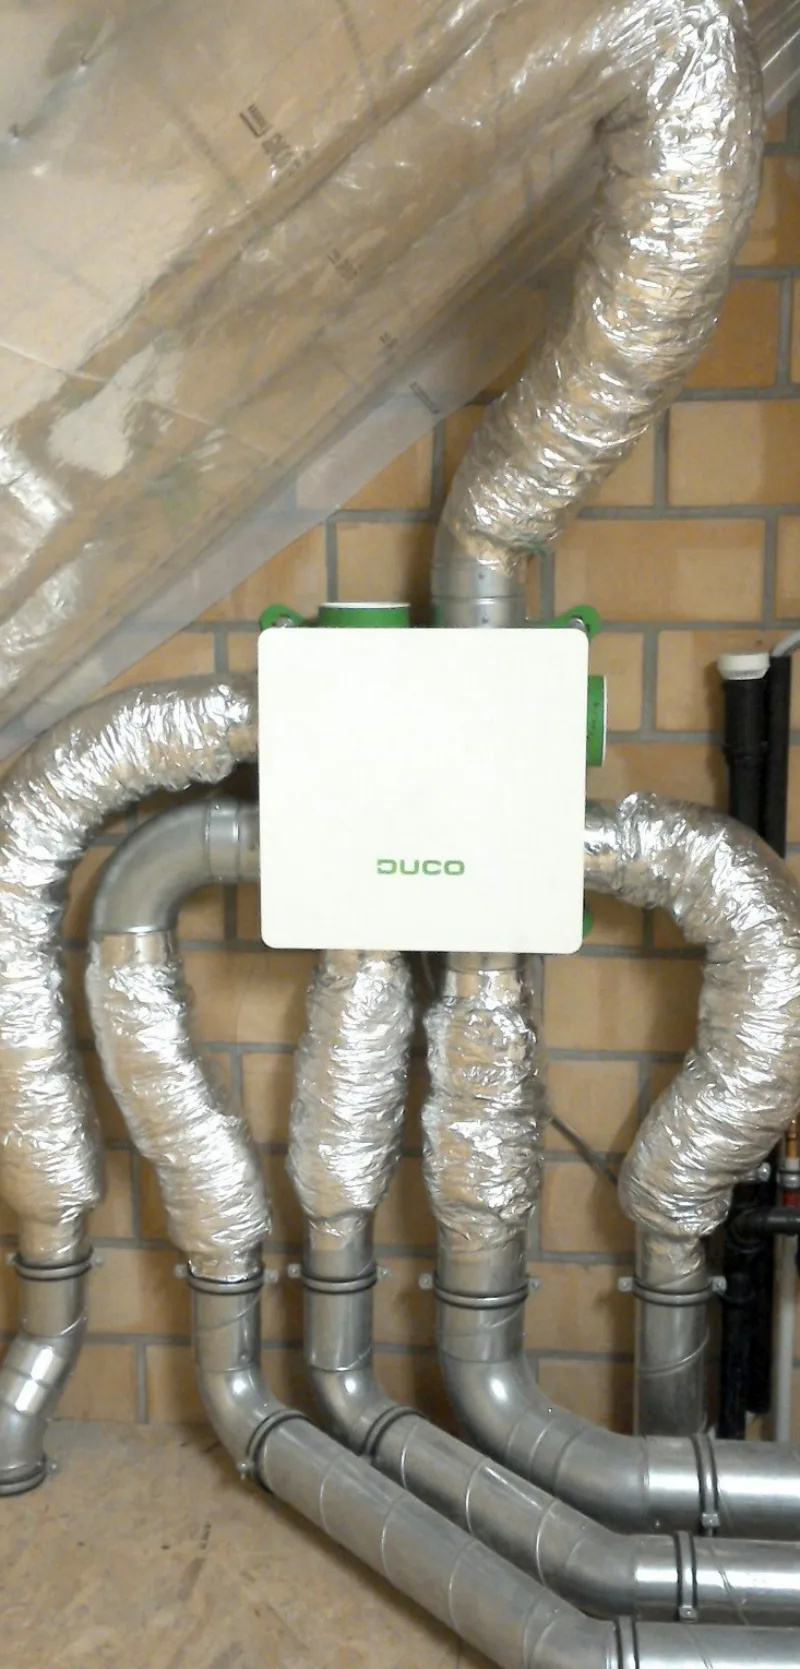 Comfort Home plaatst het Duco DucoBox Focus ventilatiesysteem